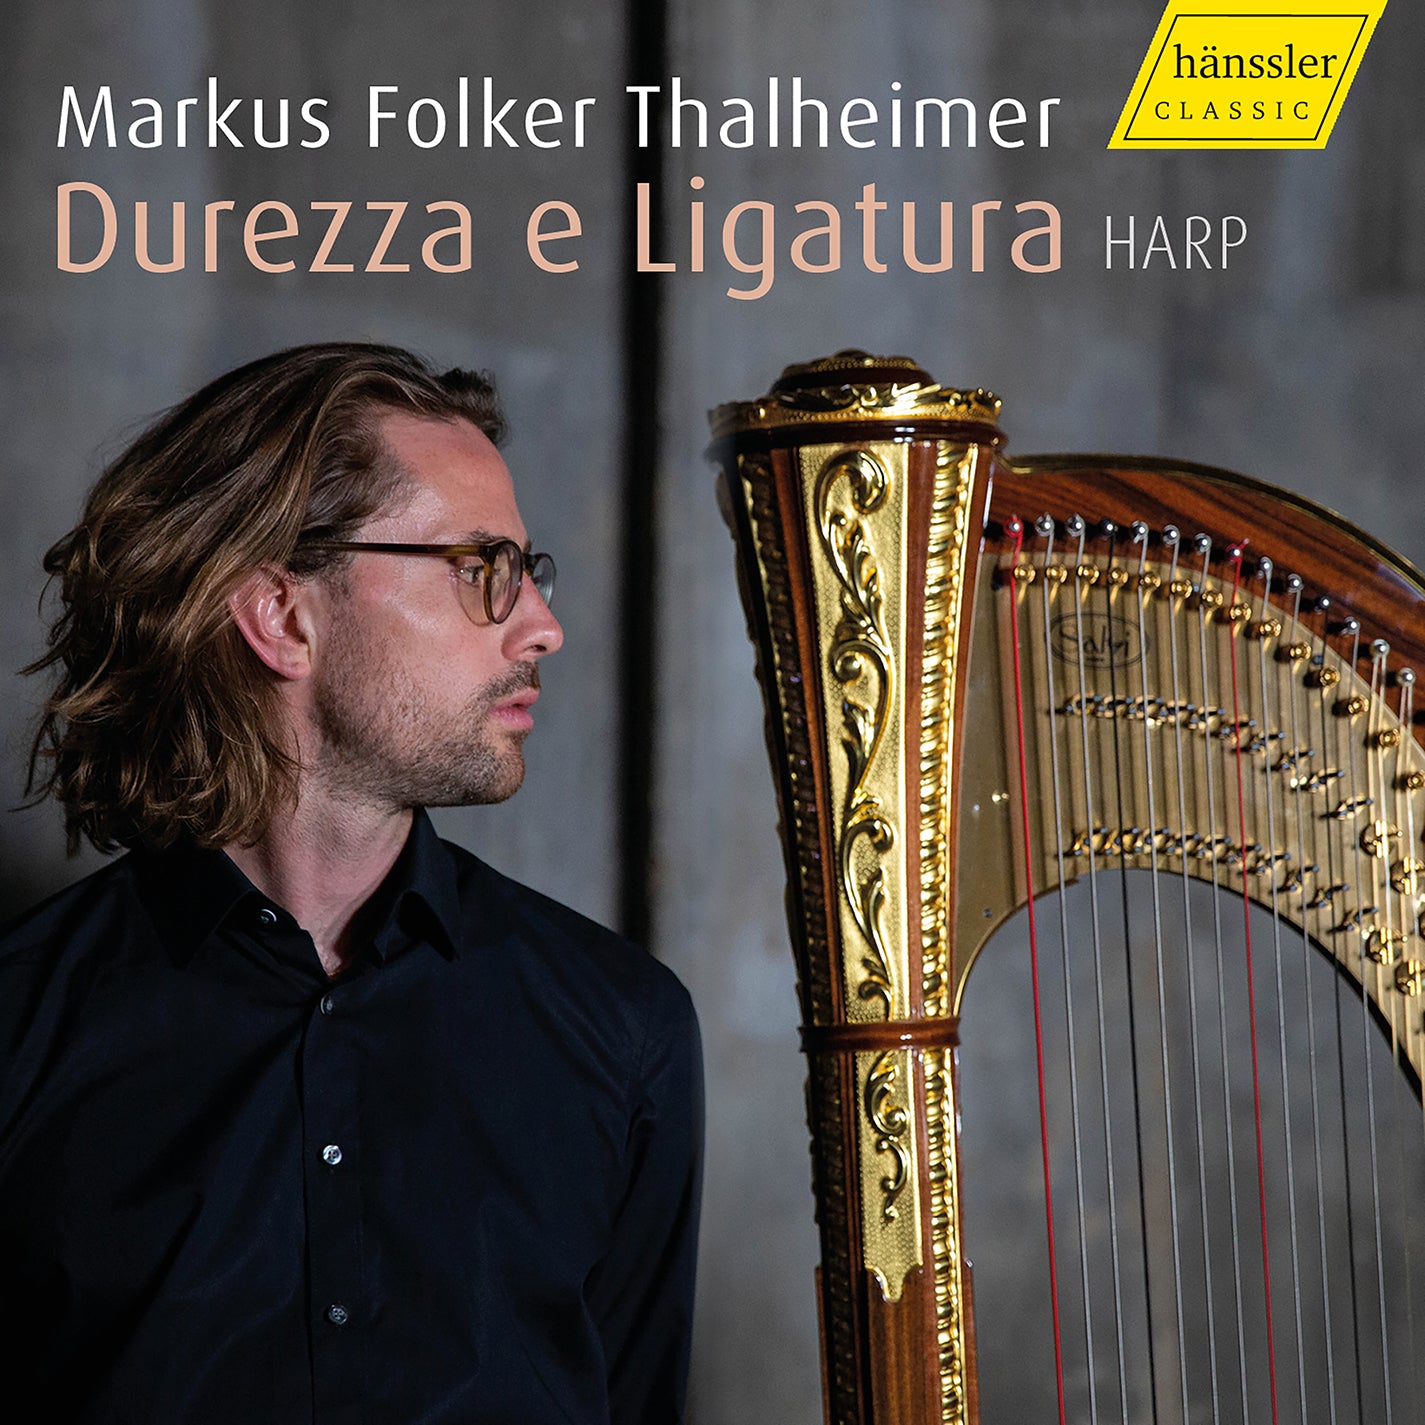 Bach, Granados, Tournier et al: Durezza e Ligatura - Harp Music / Thalheimer